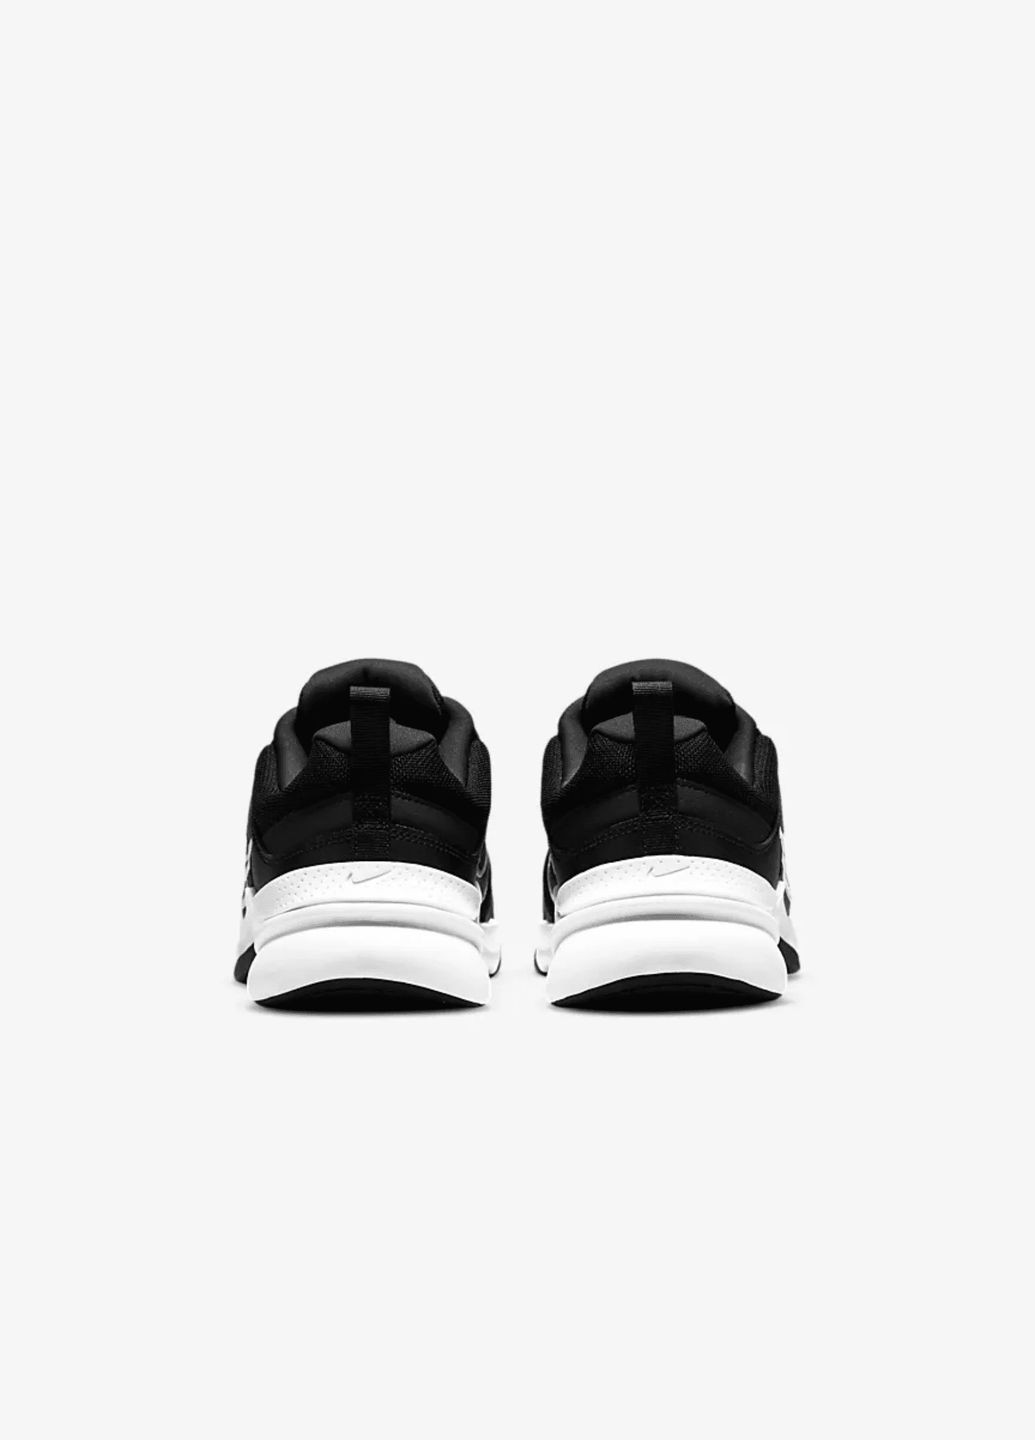 Белые всесезонные кроссовки мужские оригинал кроссовки мужские defyallday dj1196-002 весна-осень кожа текстиль черные Nike